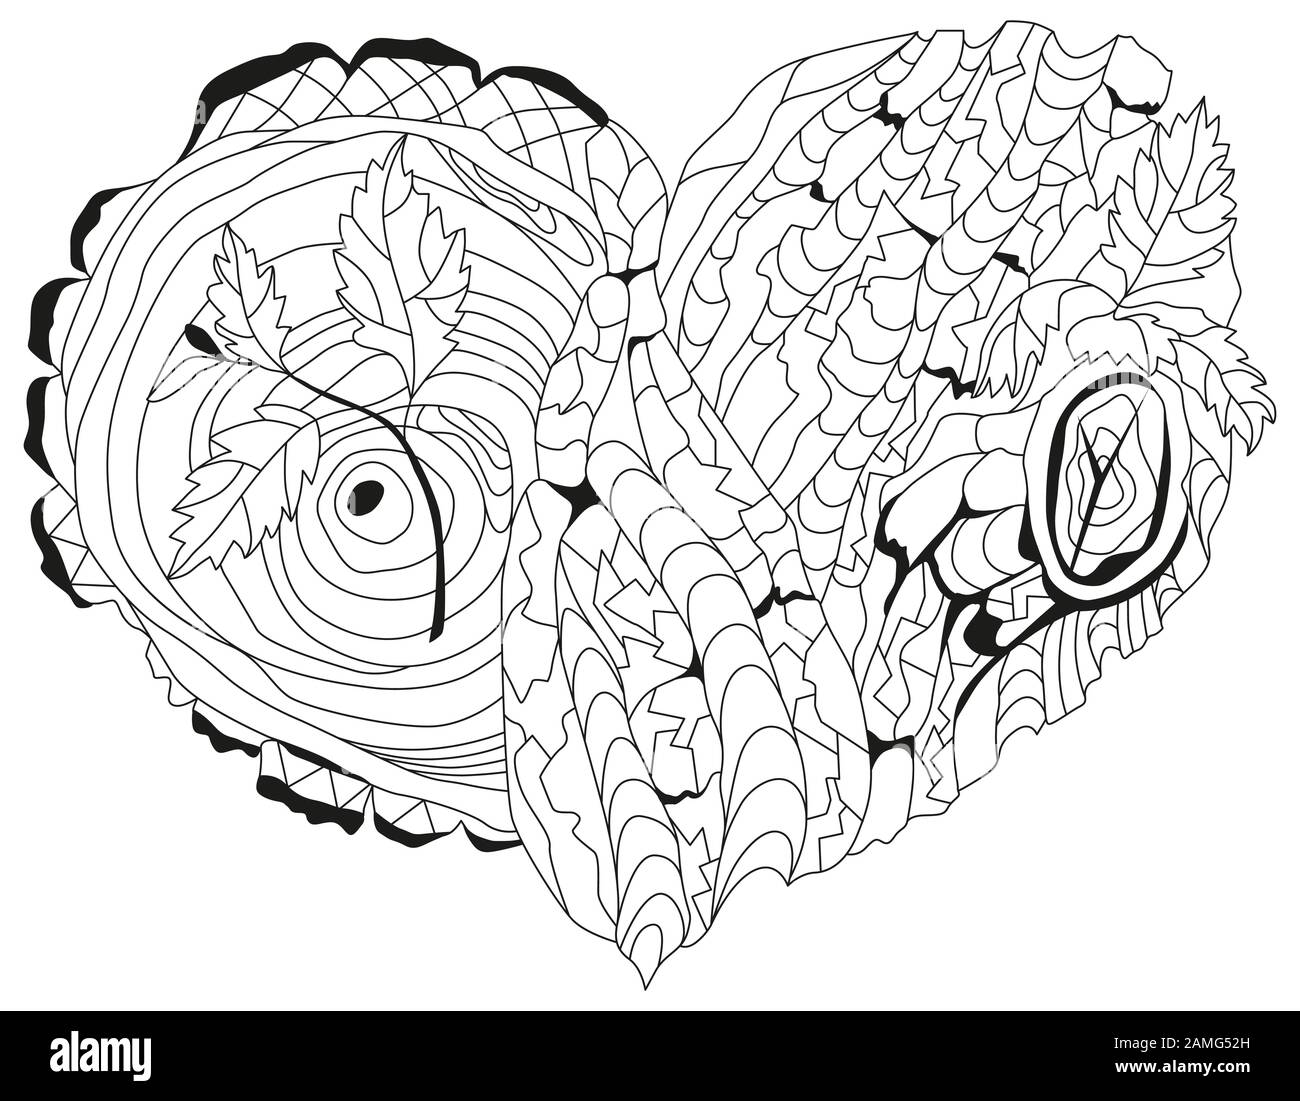 Coeur de caniche esquisse avec texture d'écorce d'arbre et jeunes pousses Illustration de Vecteur